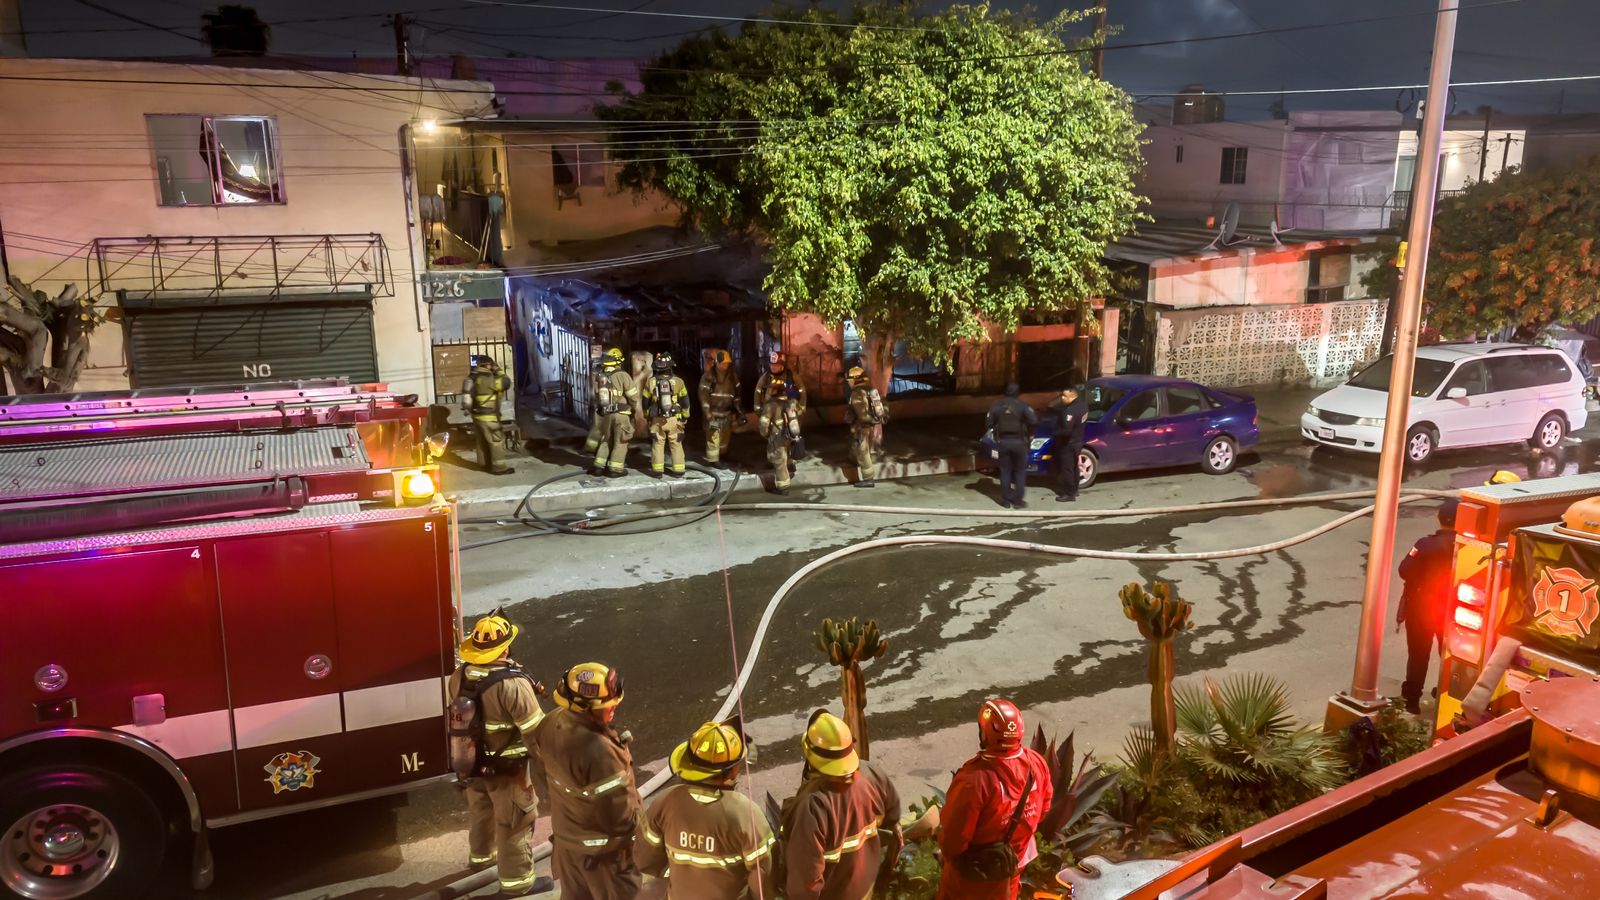 [VIDEO] Muere pareja calcinada dentro de un domicilio tras incendio: Tijuana